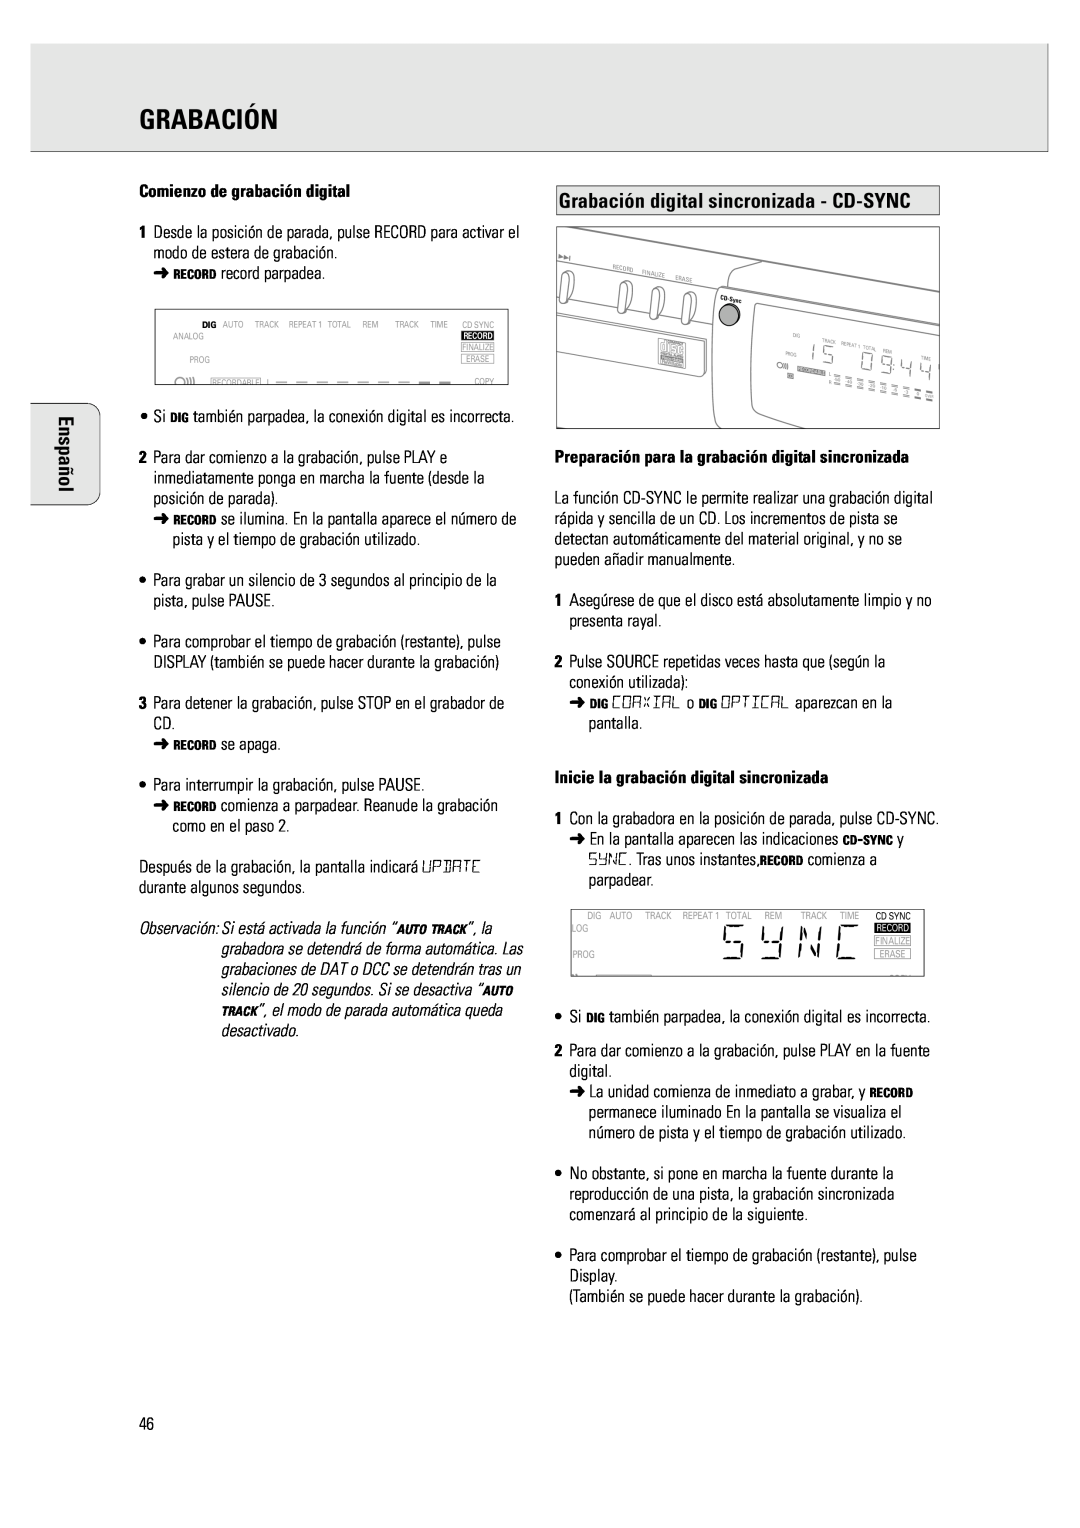 Philips CDR 760 manual Grabación digital sincronizada - CD-SYNC, Comienzo de grabación digital, Enspañol 